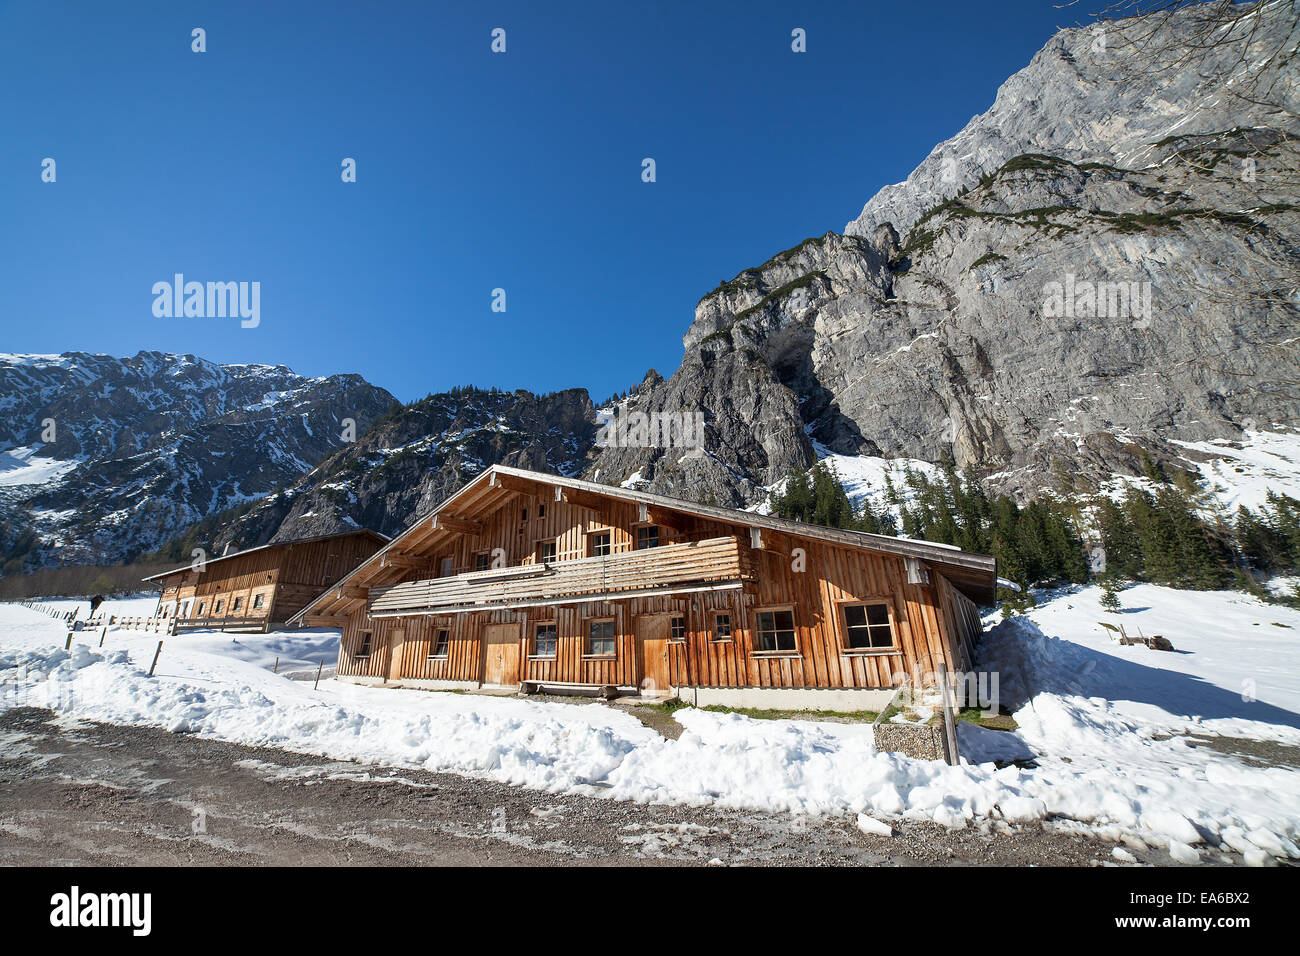 Paesaggio invernale in una valle di montagna con case in legno. Austria, Tirolo. Foto Stock